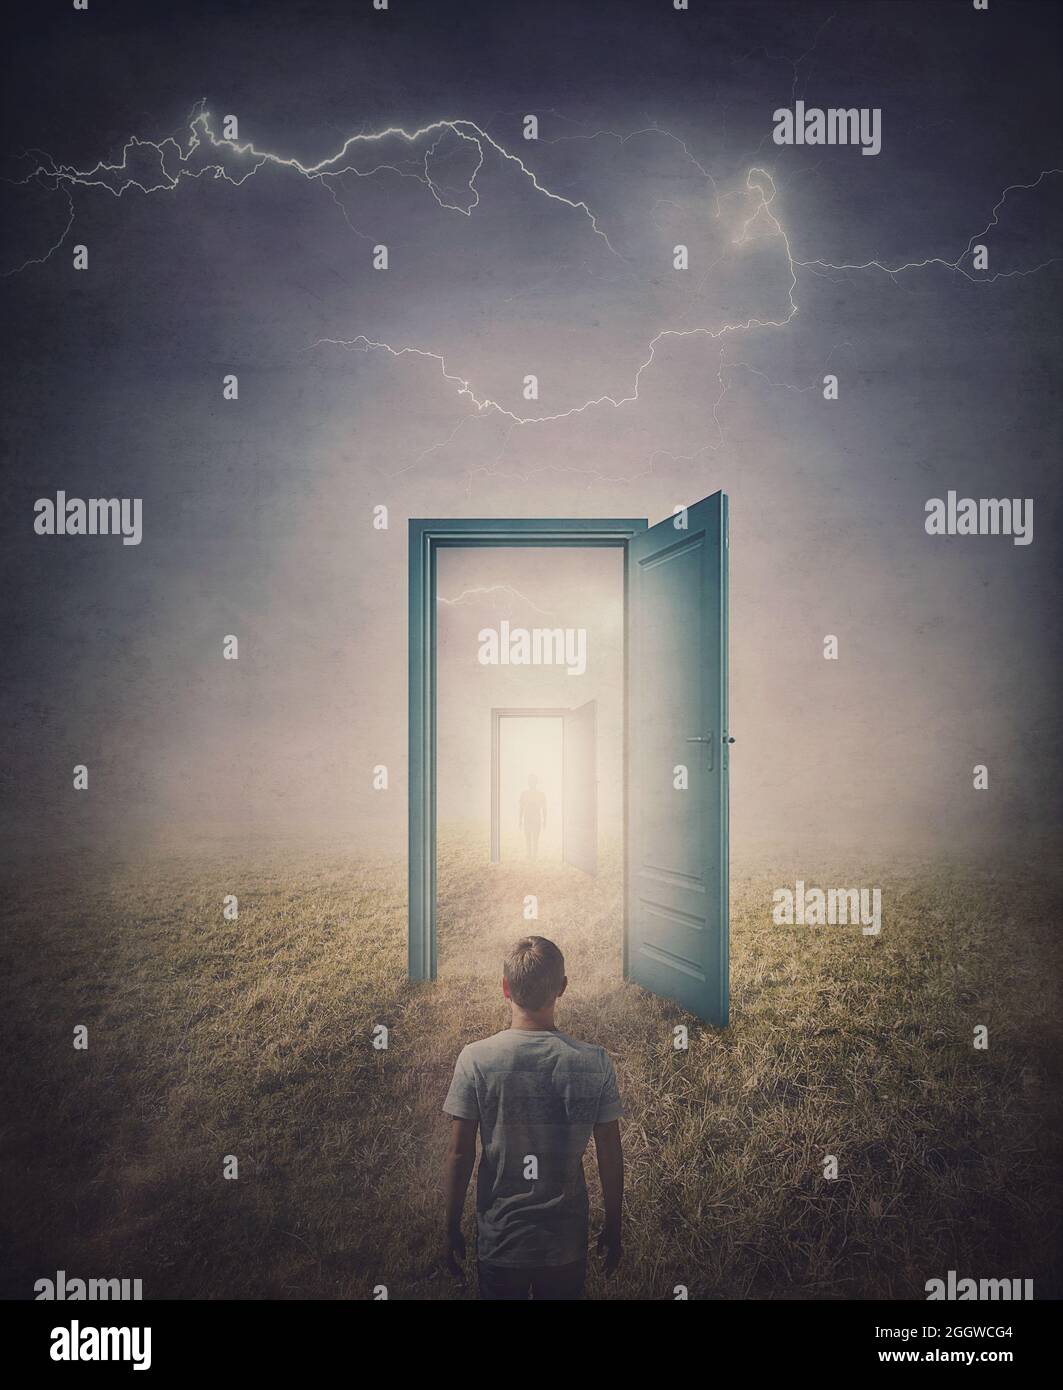 Konzept der Teleportationstüren. Rückansicht einer Person, die vor einer Tür im Land steht, im Spiegel gesehen wie ein Portal zu einer anderen Welt. M Stockfoto